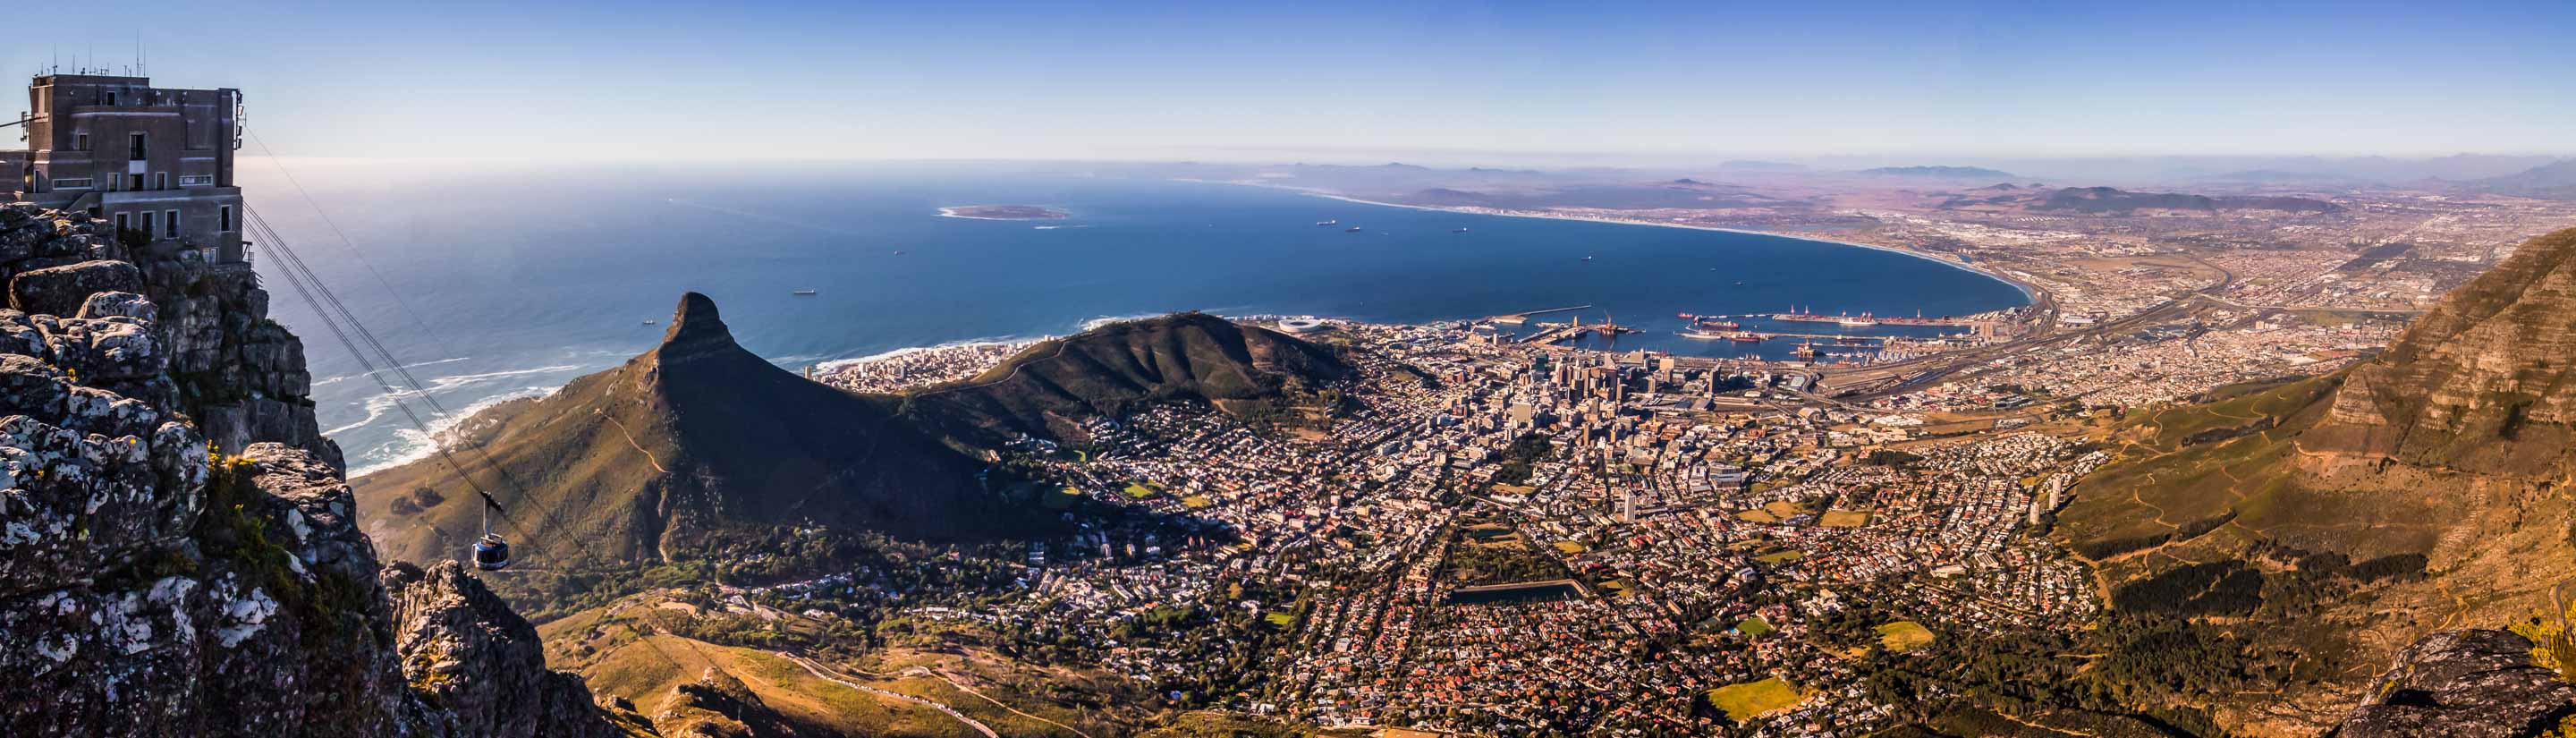 Südafrika-Reise: Faszination pur